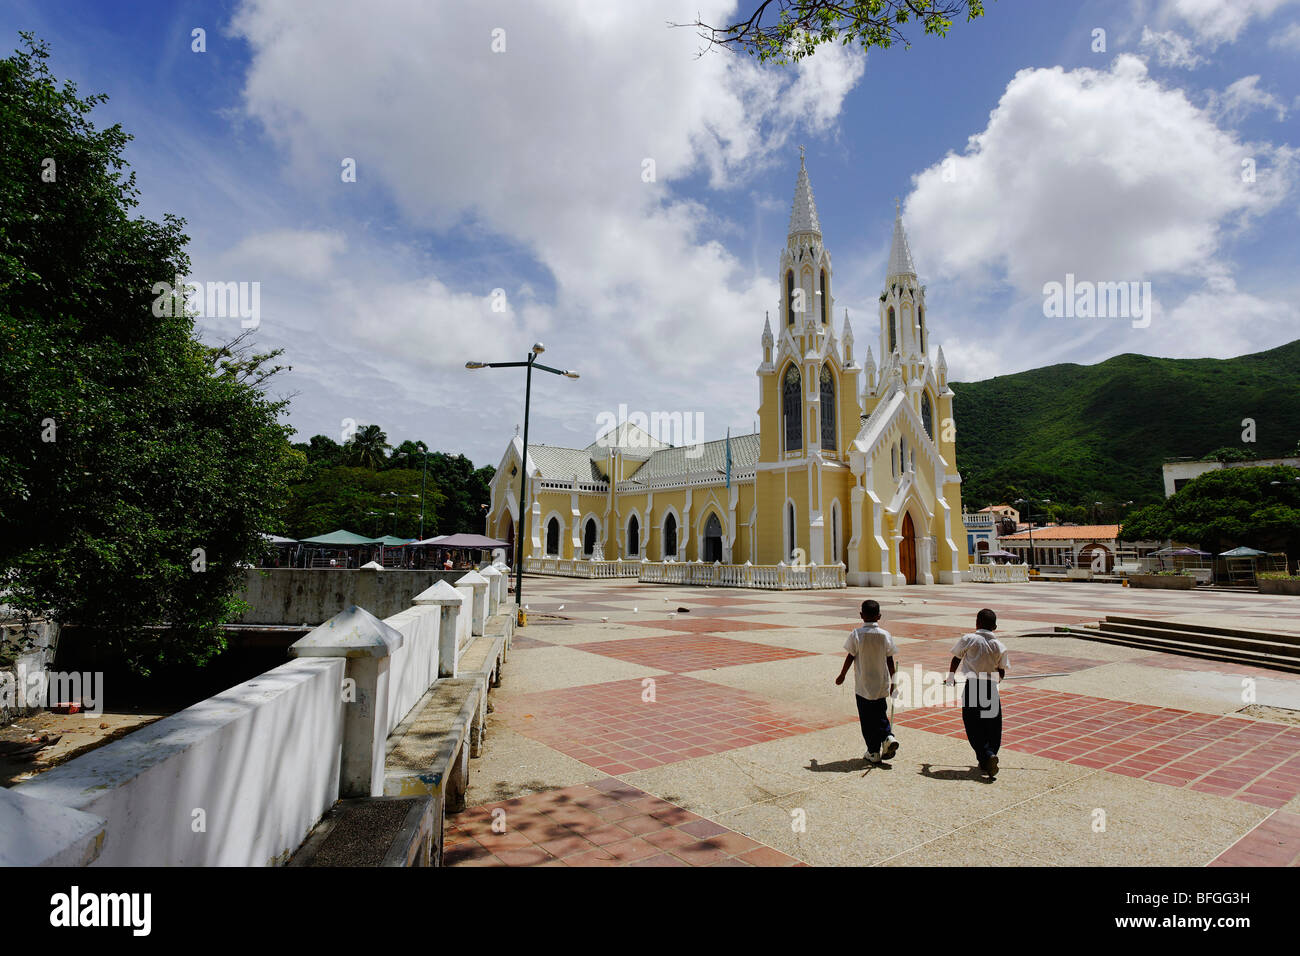 Basilica Menor de Nuestra Senora del Valle, El Valle del Espiritu Santo, Isla Margarita, Nueva Esparta, Venezuela Stock Photo